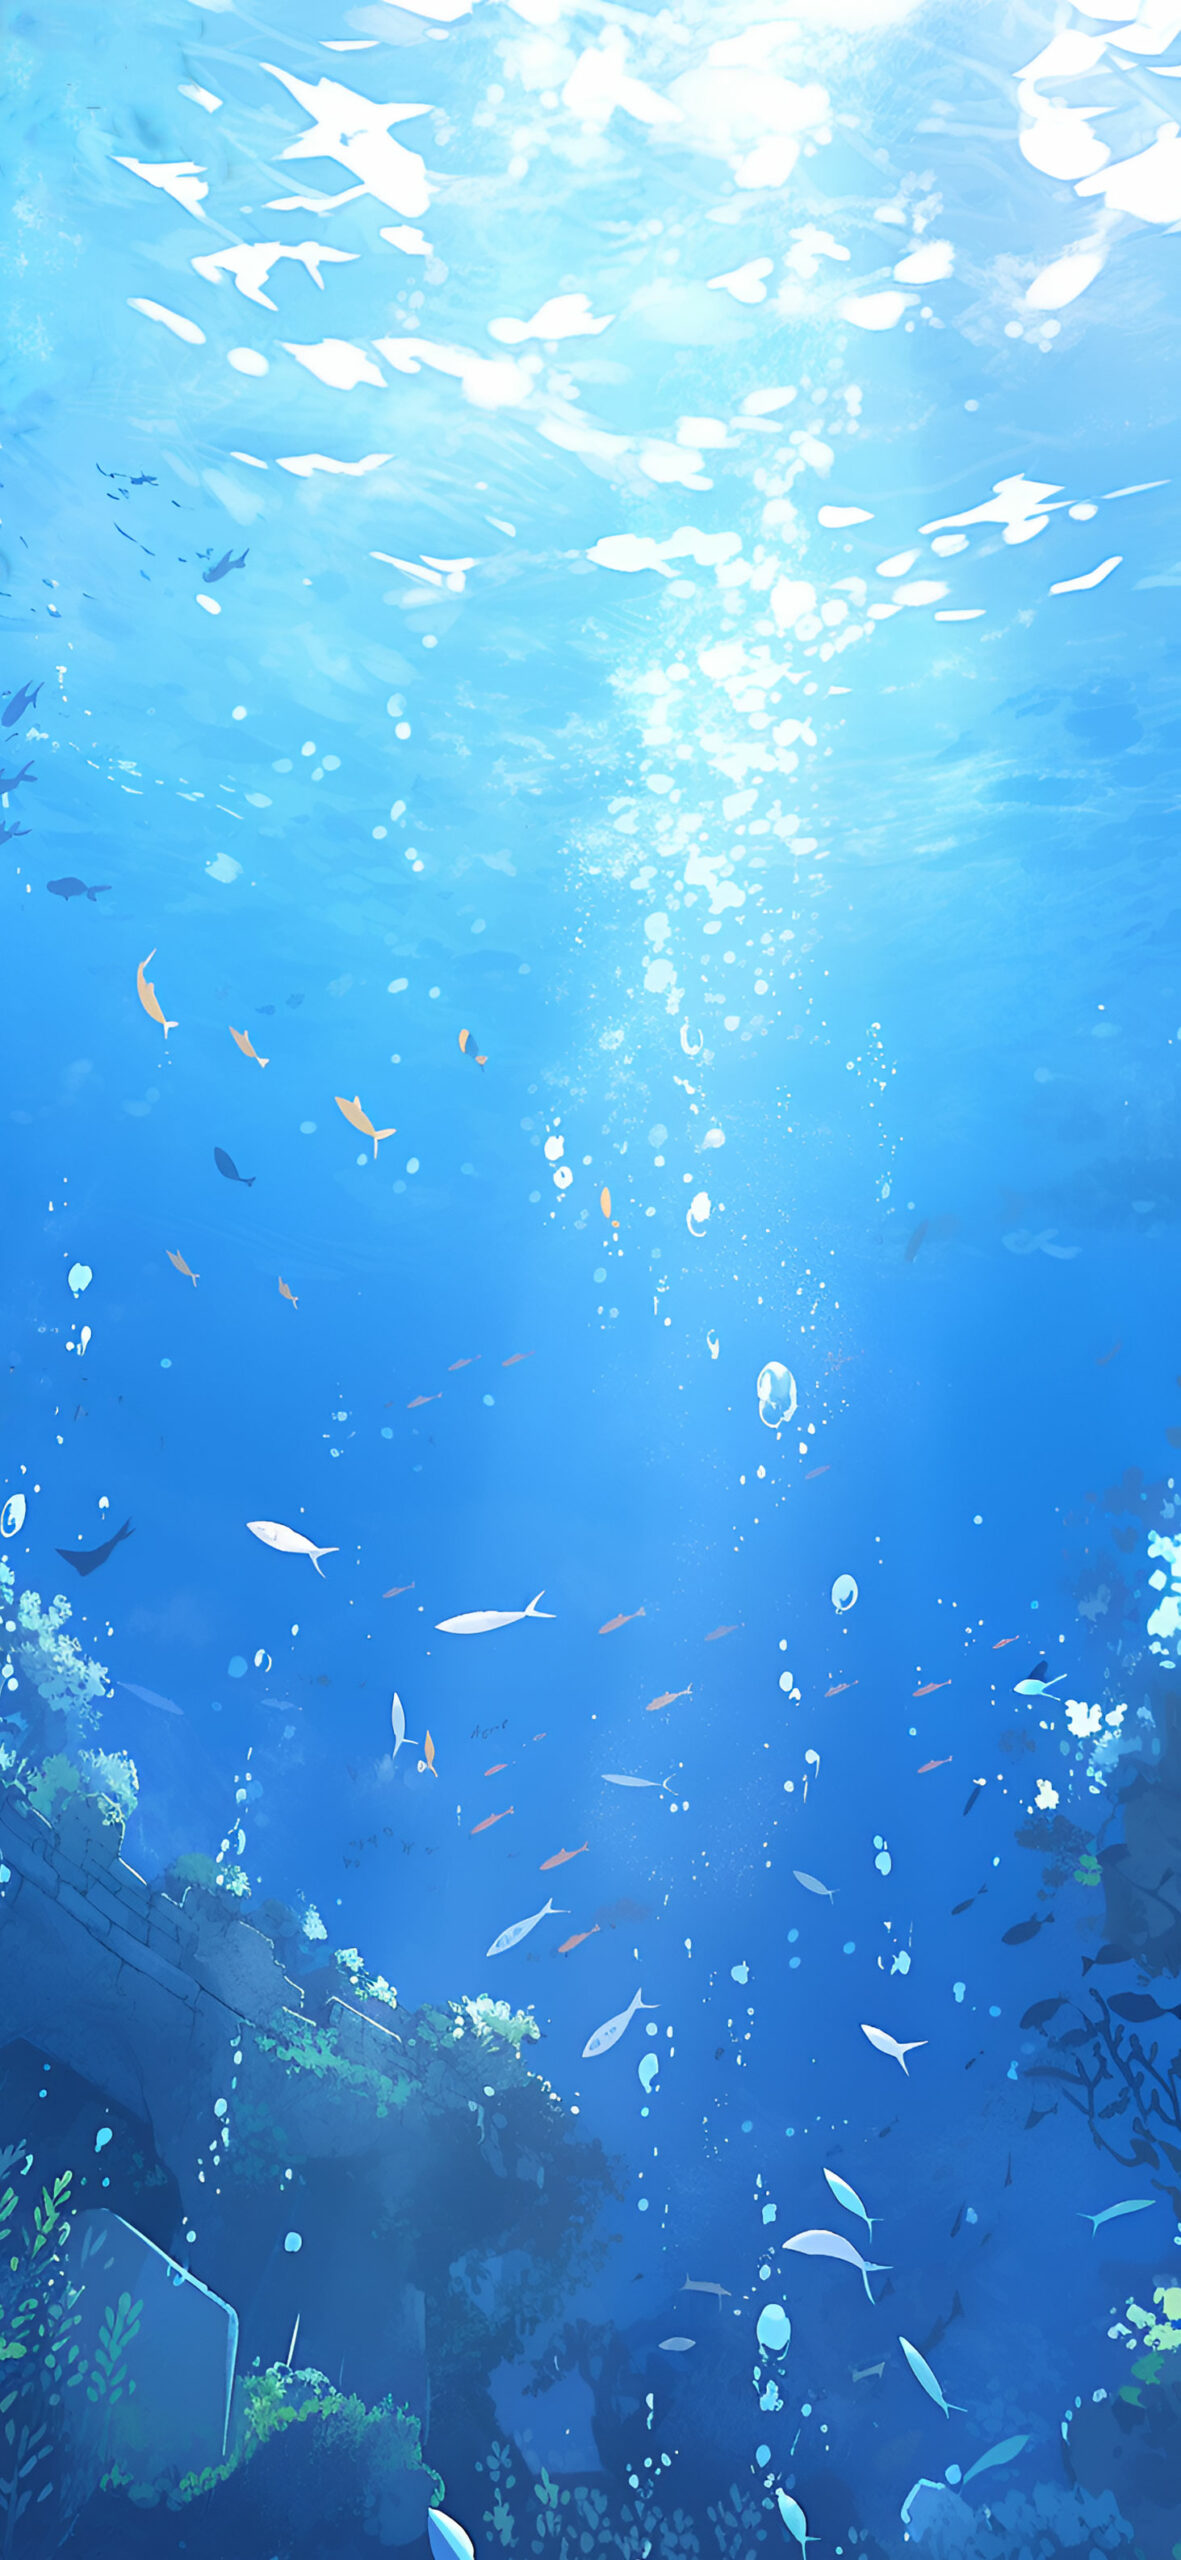 Blue underwater world wallpaper Deep blue ocean art wallpaper